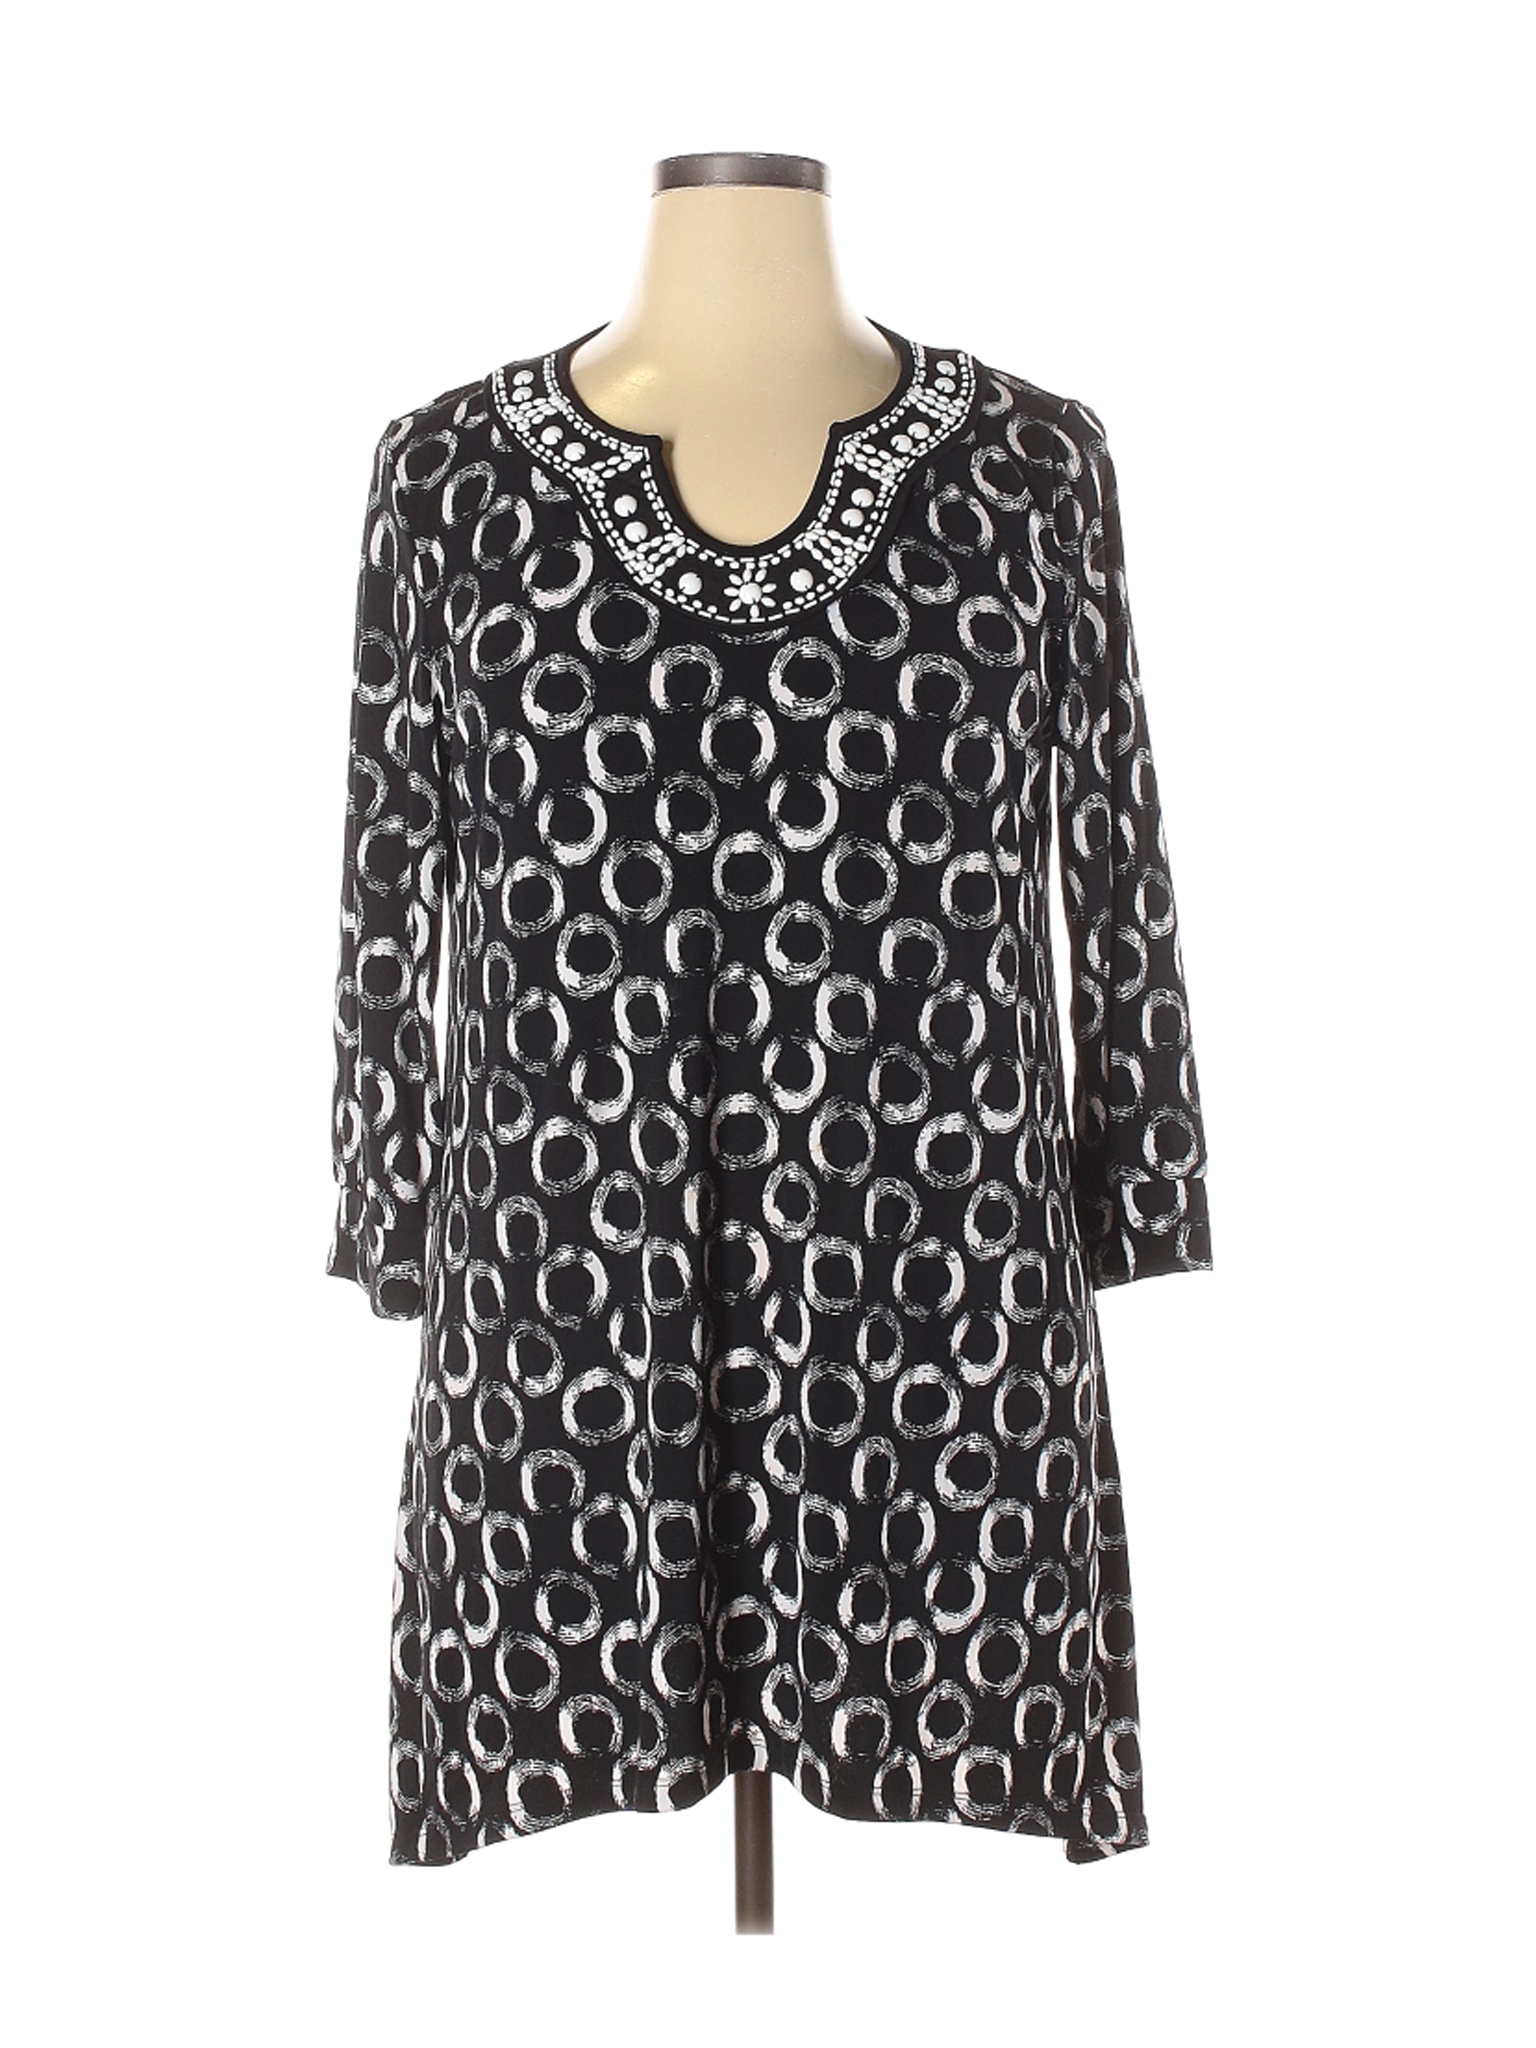 Style&Co Women Black Casual Dress XL | eBay